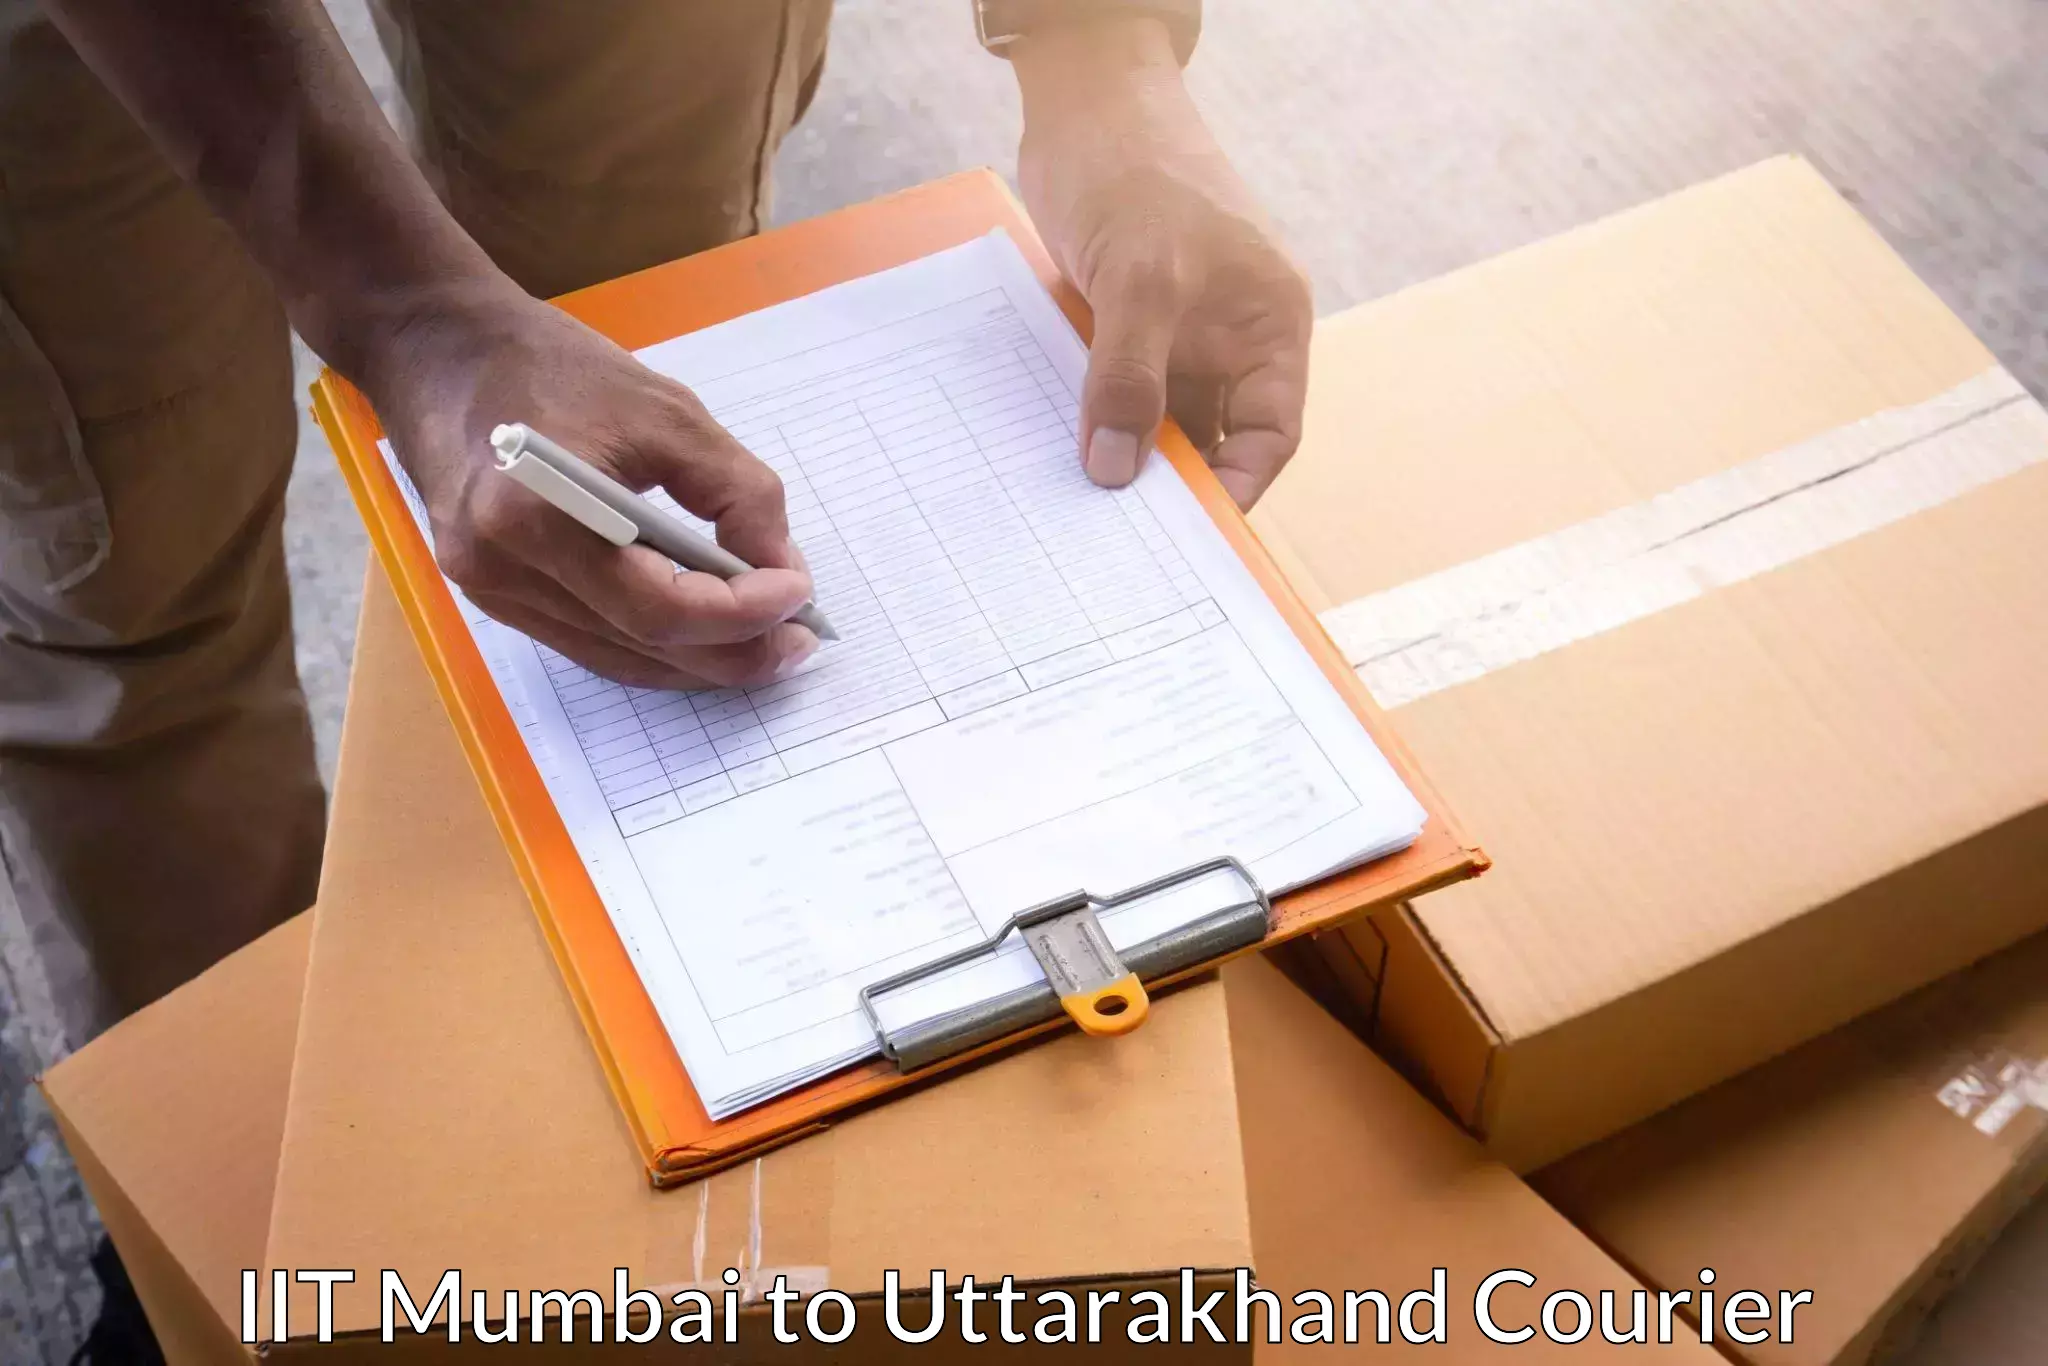 Advanced shipping technology IIT Mumbai to IIT Roorkee